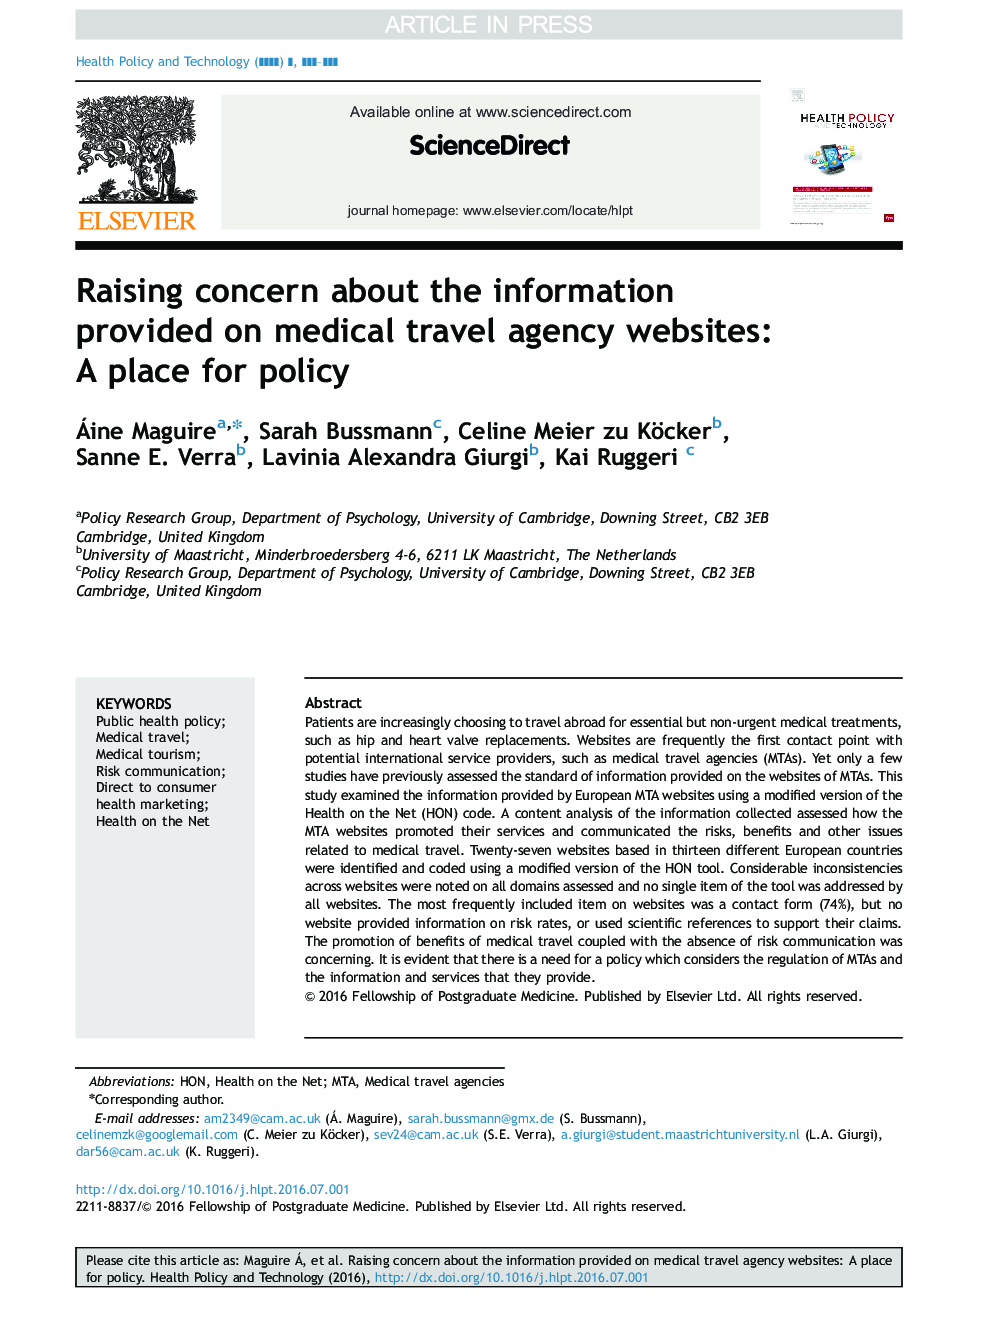 افزایش نگرانی در مورد اطلاعات ارائه شده در وب سایت های آژانس های مسافرتی پزشکی: محل برای سیاست 